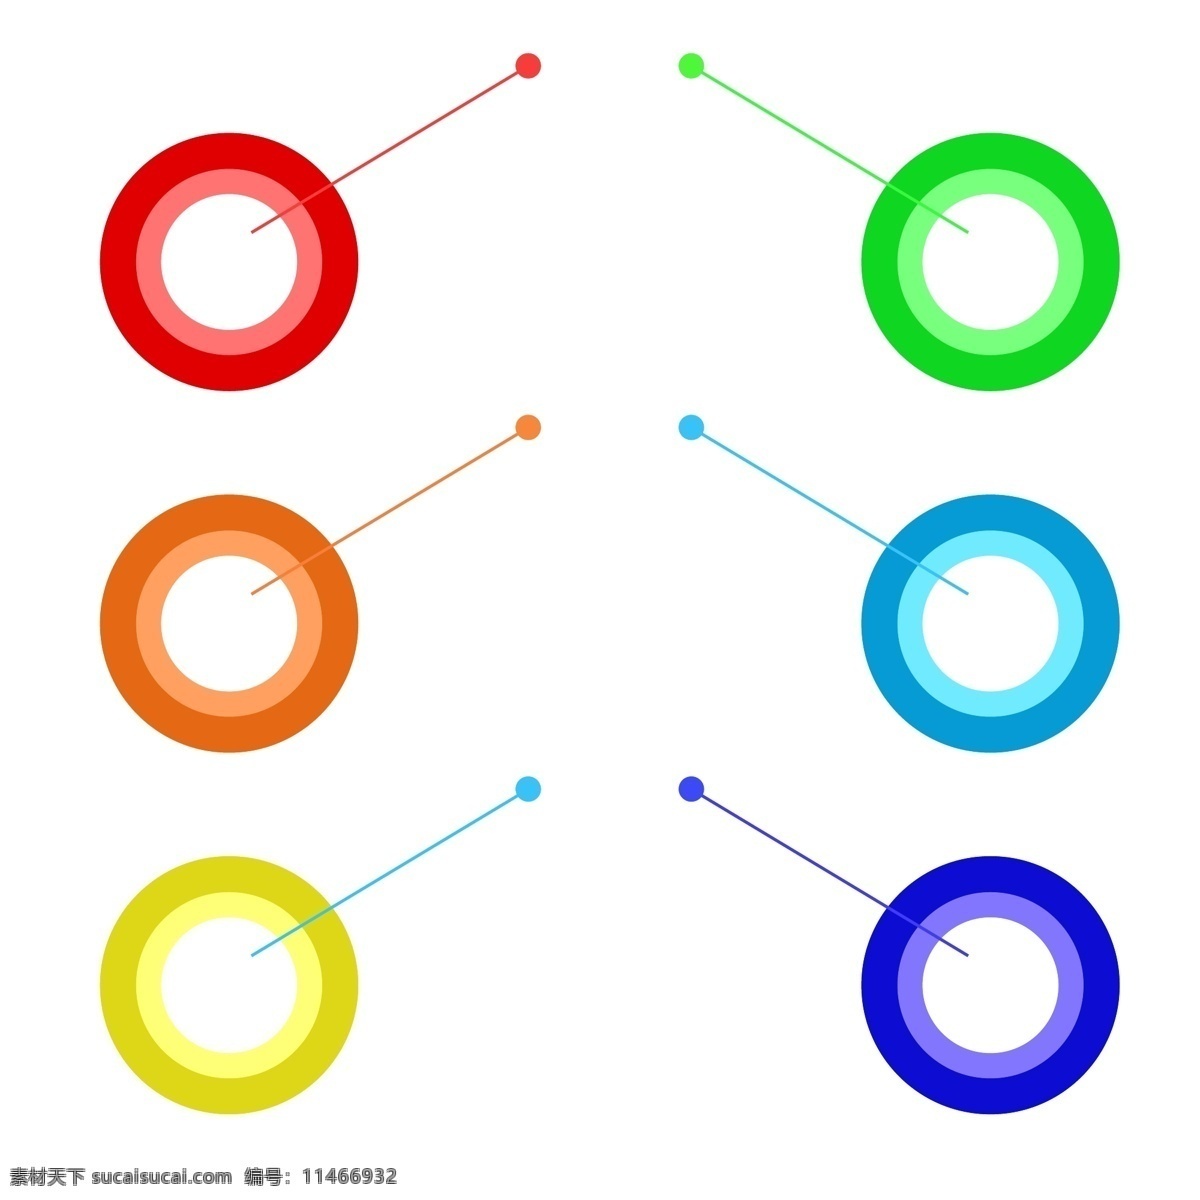 彩色 圆点 目录 信息图 数据图 流程图 彩色圆点插画 图标 标题 信息图表